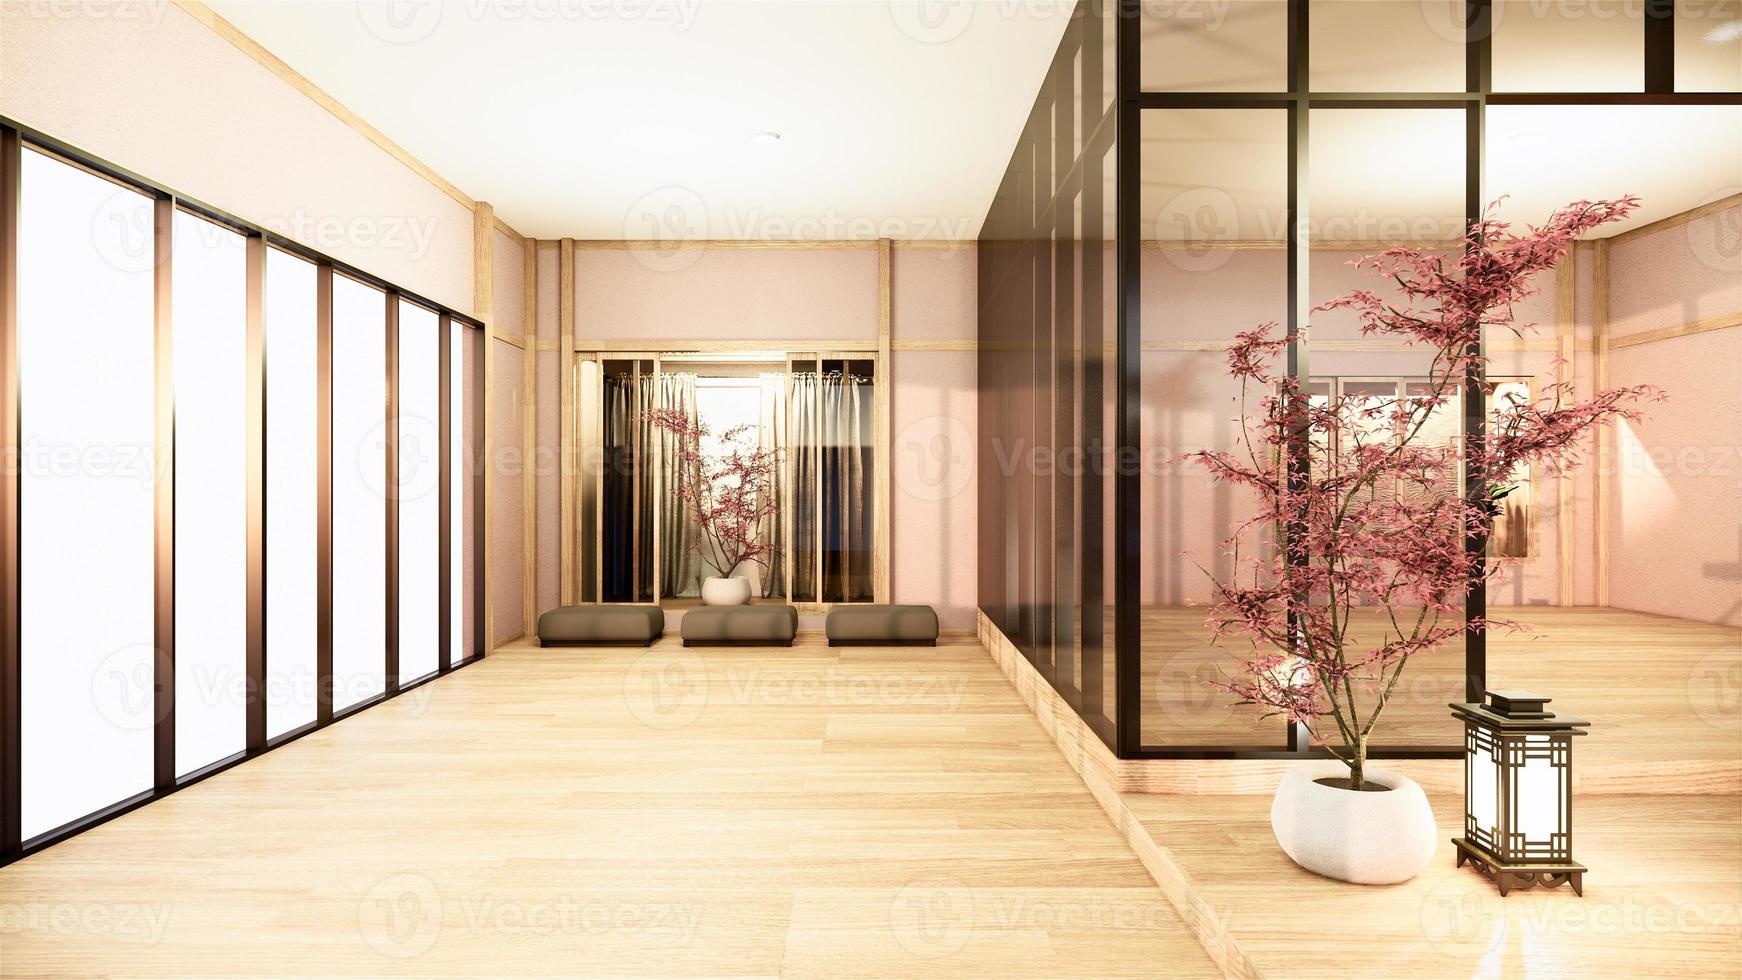 escritório comercial - bela sala de reuniões e mesa de conferência no Japão, estilo moderno. Renderização 3d foto